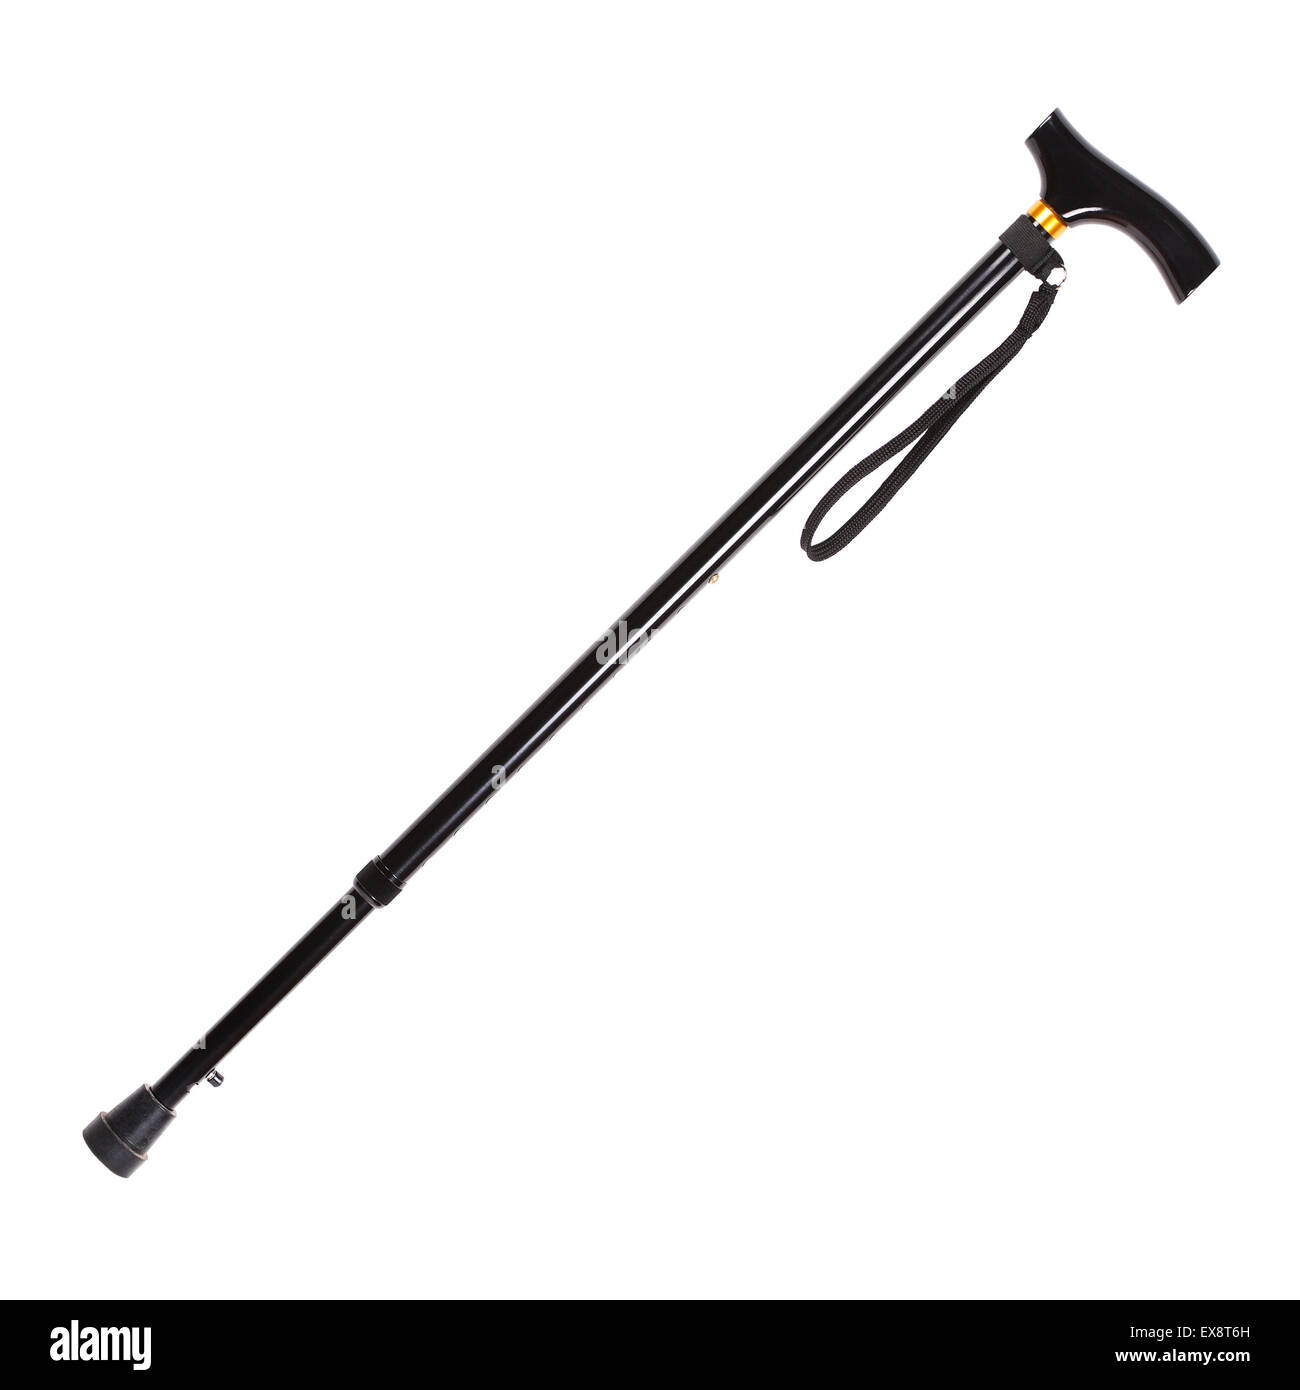 orthopedic walking stick, isolated on white background Stock Photo